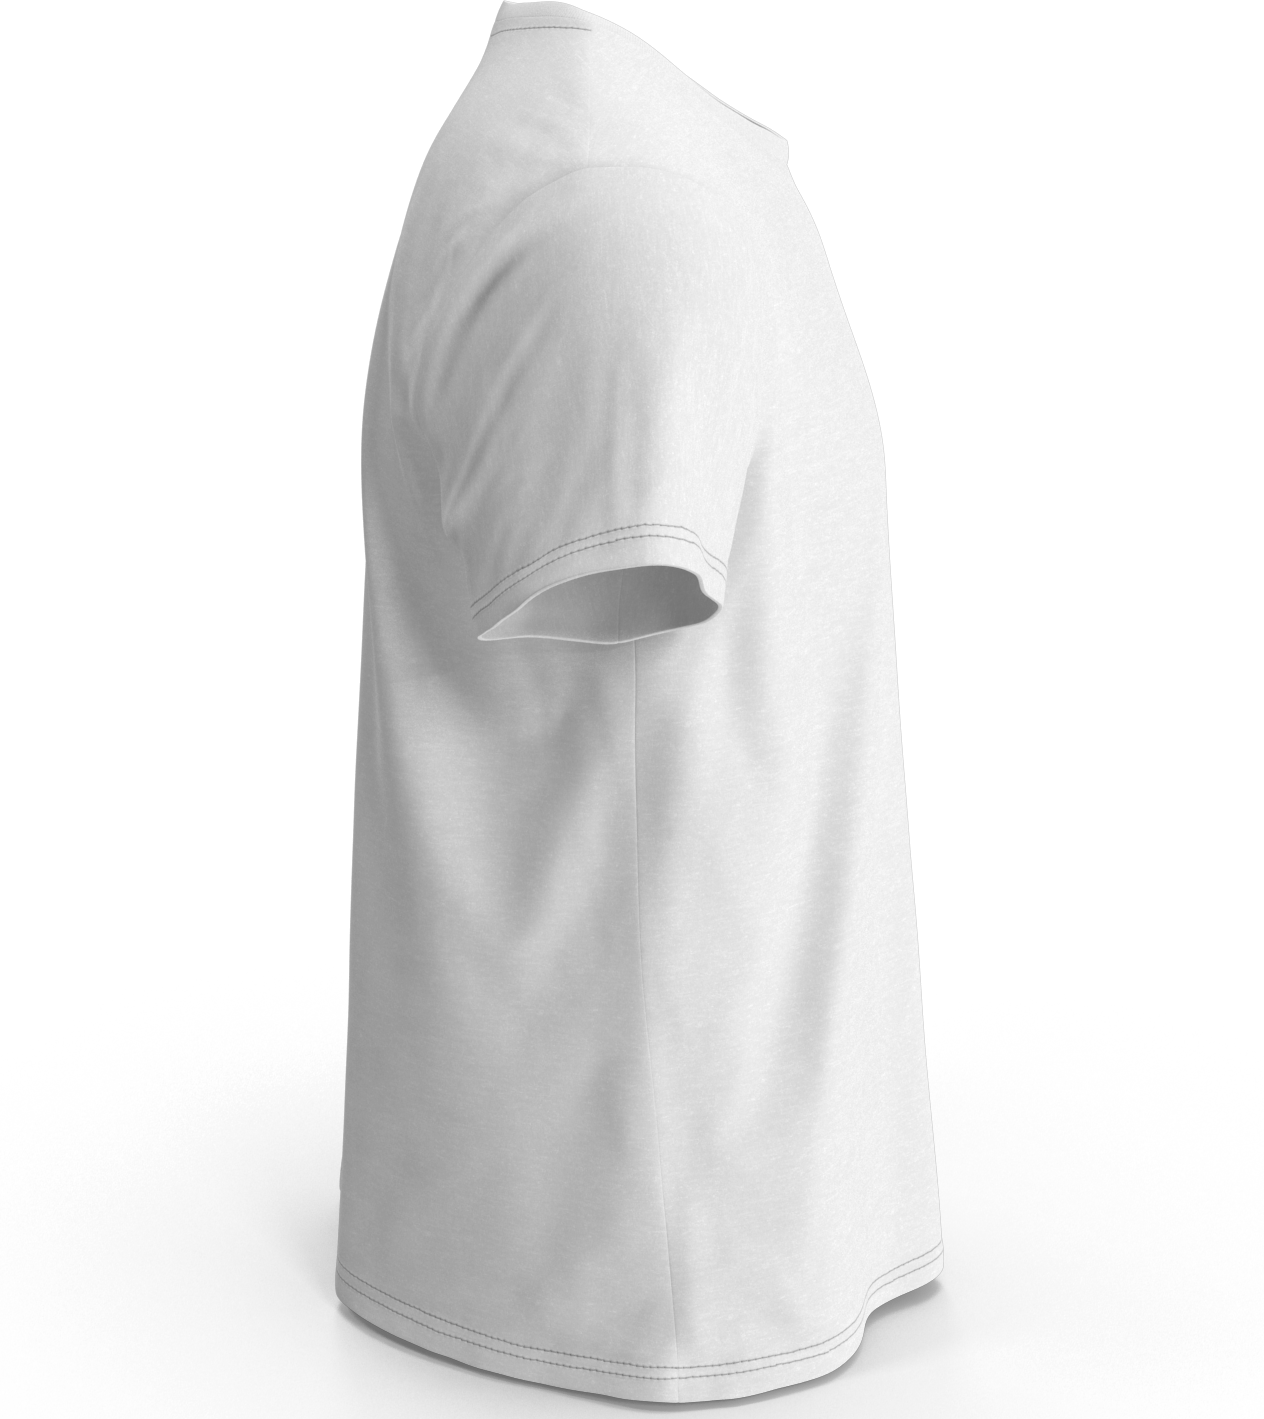 White color 100% Soft Cotton Womens T-Shirt